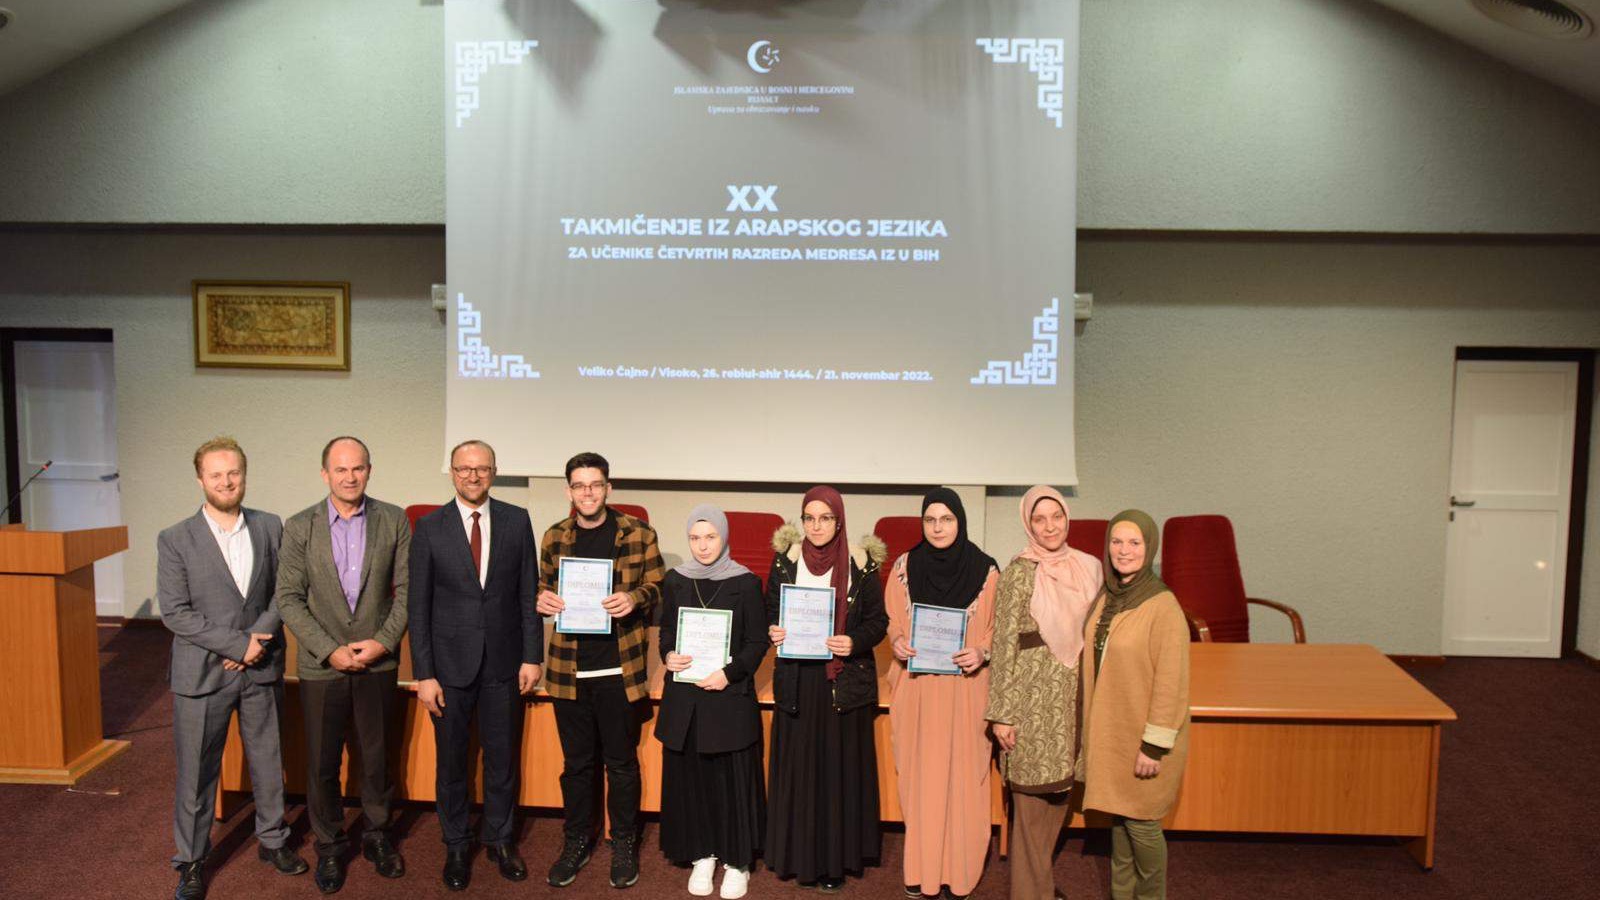 U Visokom održano XX takmičenje iz arapskog jezika za učenike medresa